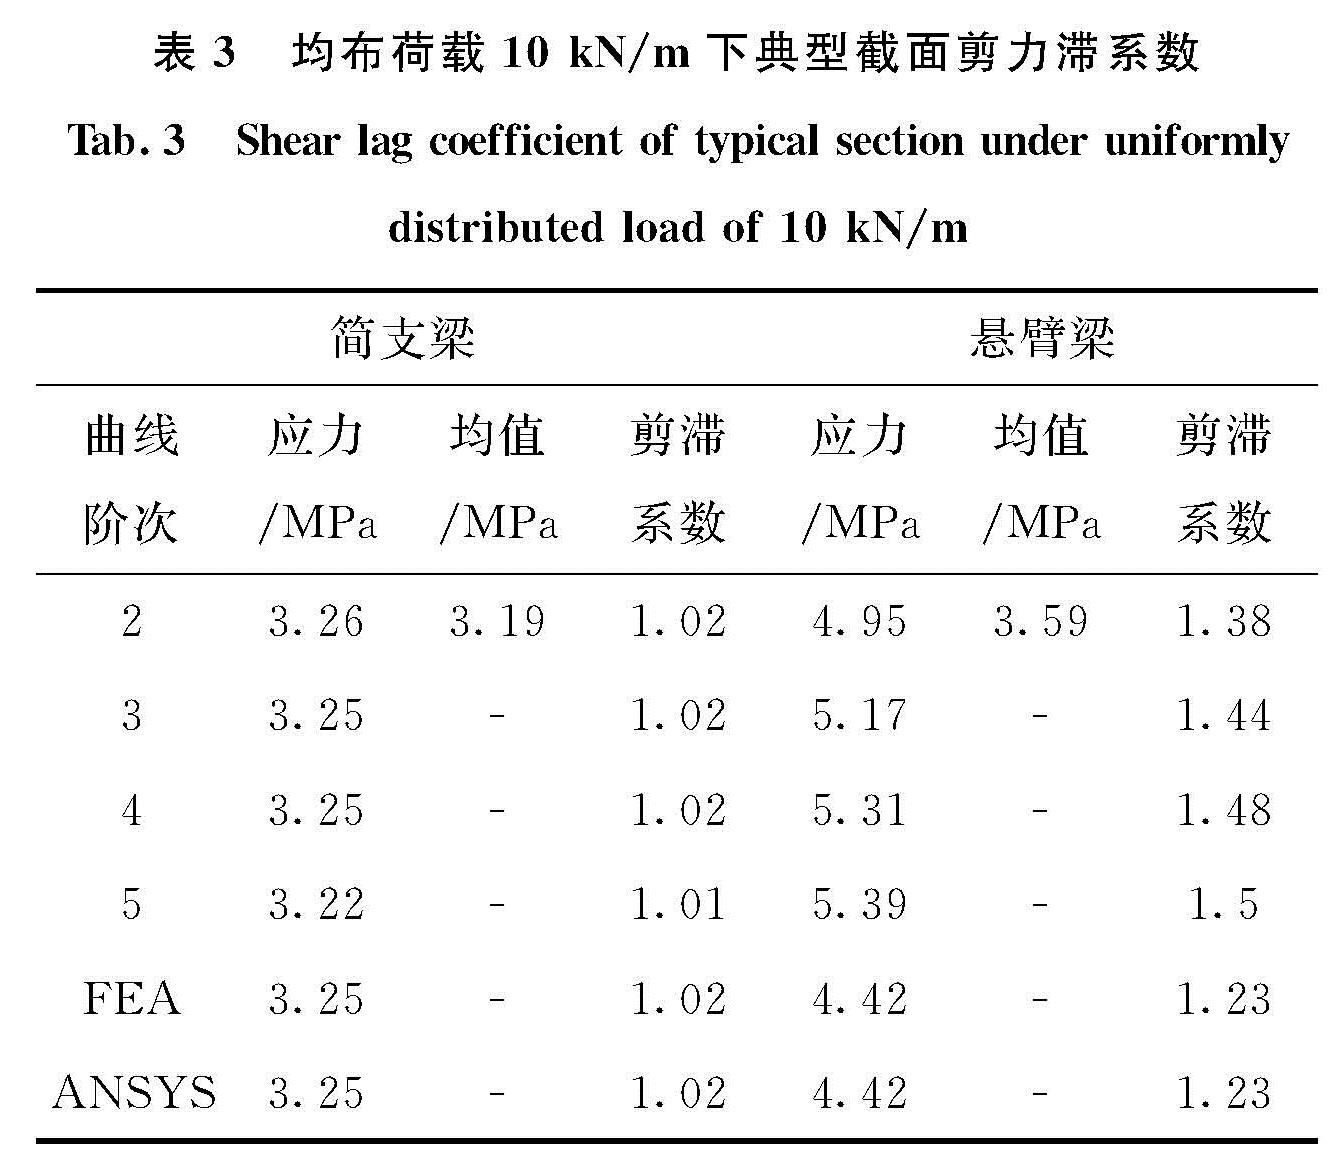 表3 均布荷载10 kN/m下典型截面剪力滞系数<br/>Tab.3 Shear lag coefficient of typical section under uniformly distributed load of 10 kN/m